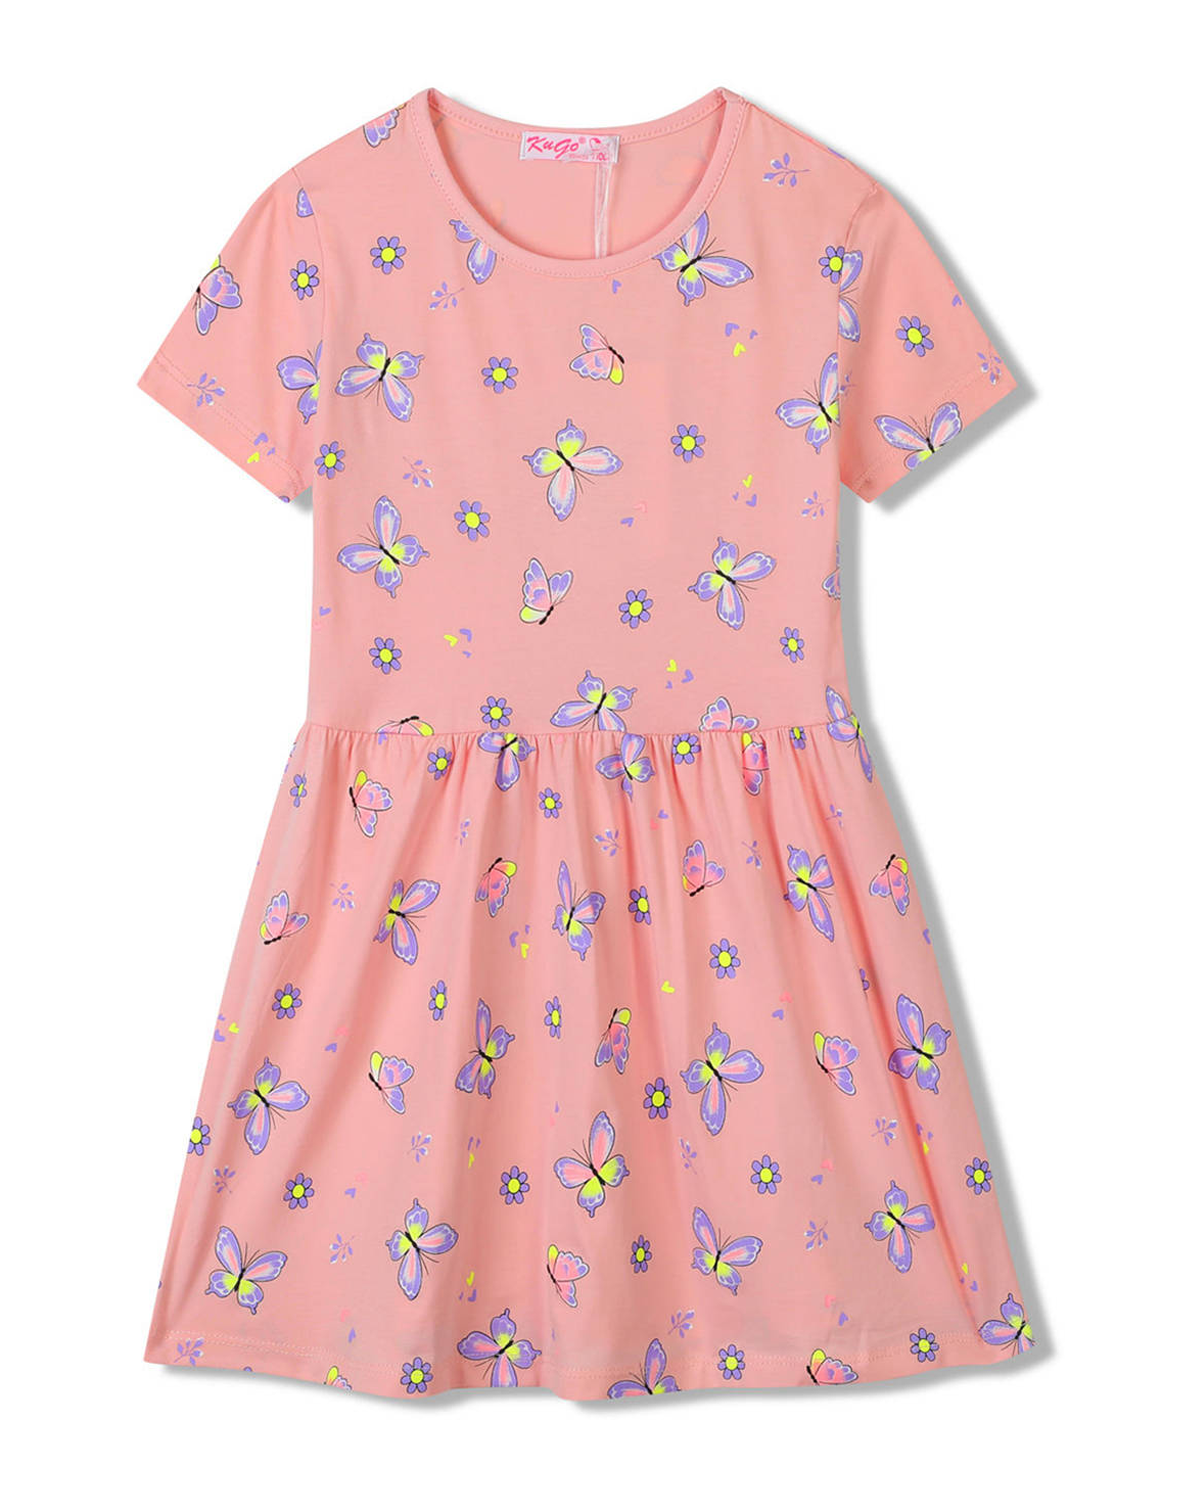 Dívčí šaty - KUGO SH3516, lososová Barva: Lososová, Velikost: 110